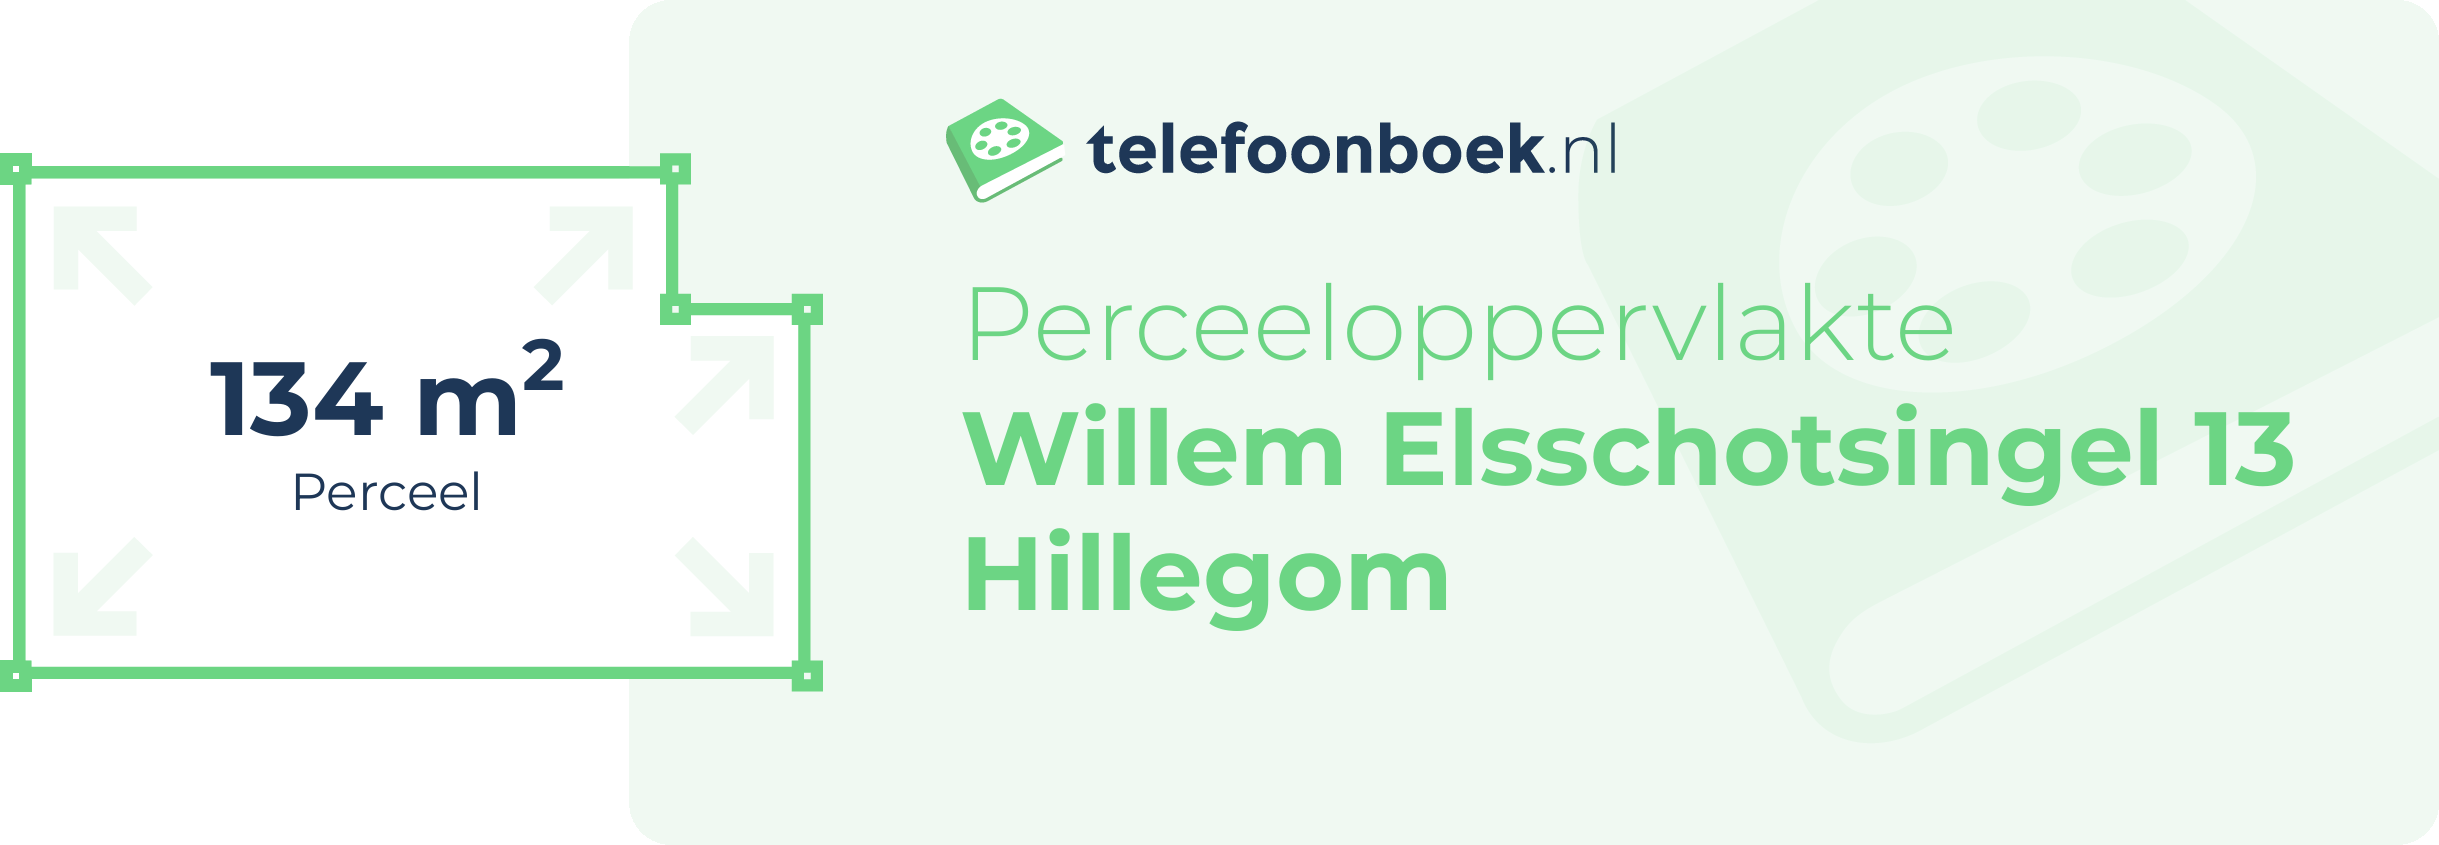 Perceeloppervlakte Willem Elsschotsingel 13 Hillegom